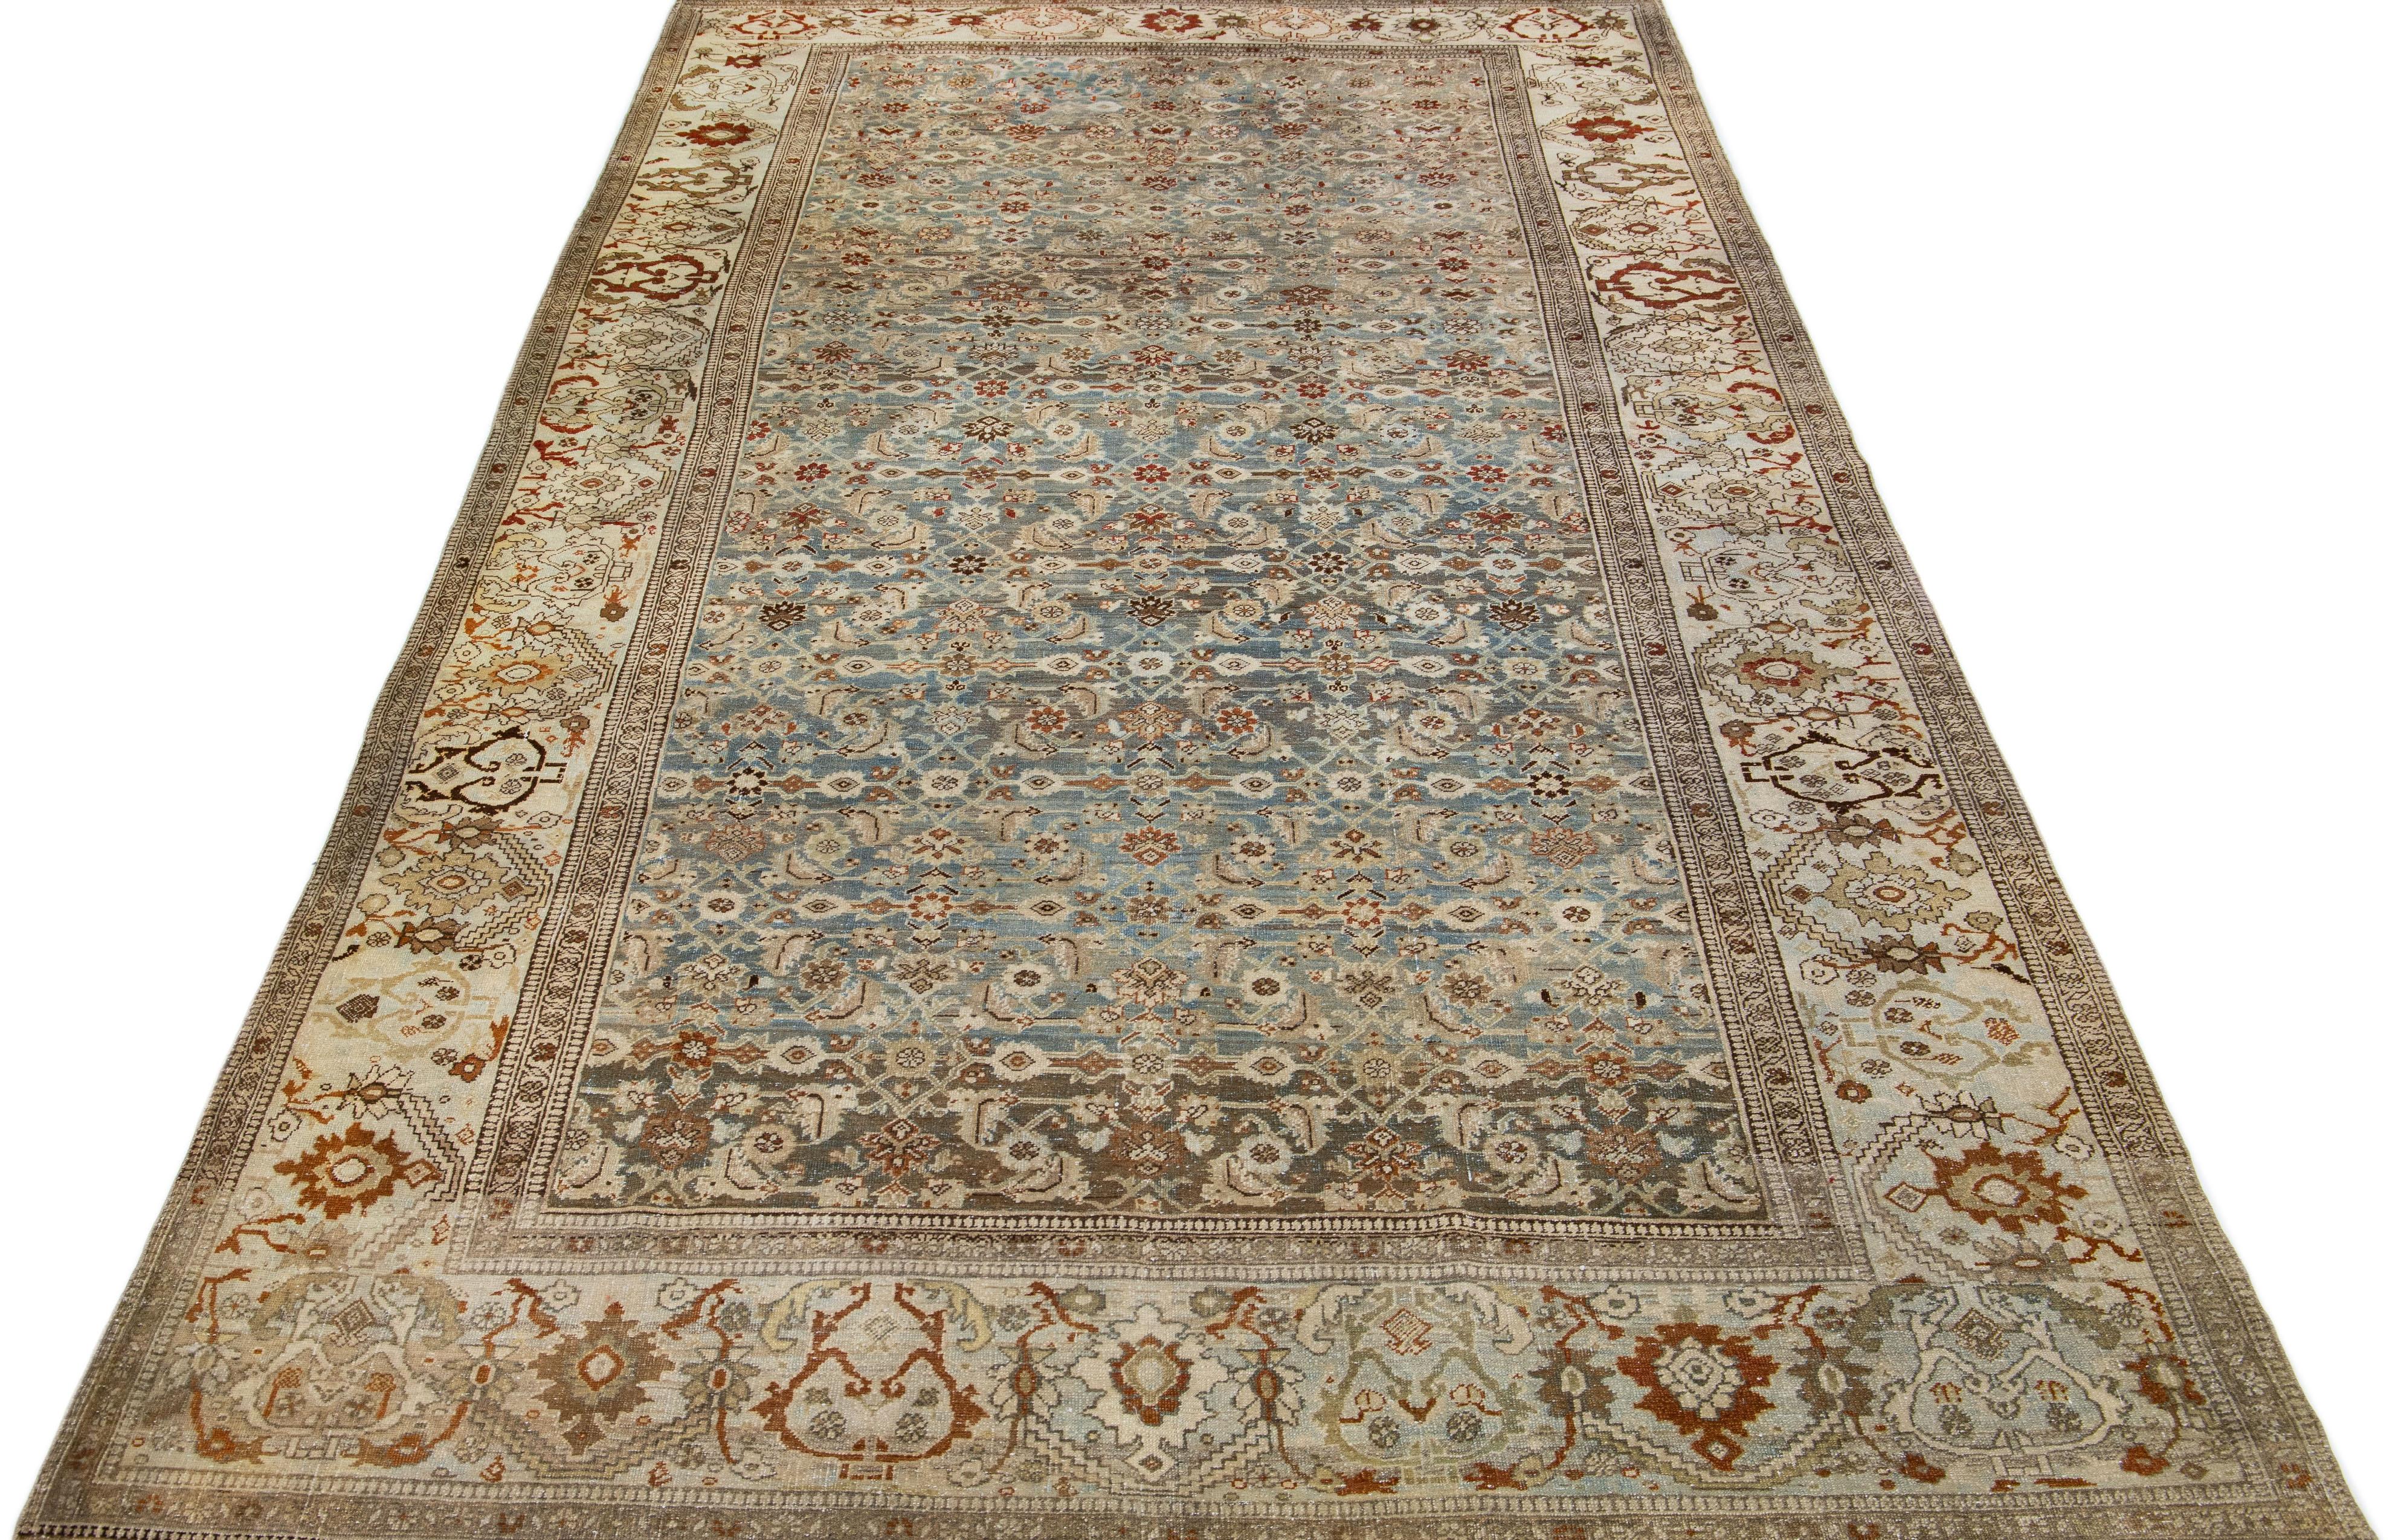 Schöne antike Bidjar handgeknüpften Wollteppich mit einem blauen Farbfeld. Dieser Perserteppich hat rostfarbene und braune Akzente in einem prächtigen traditionellen Blumenmuster.

Dieser Teppich misst 6'9